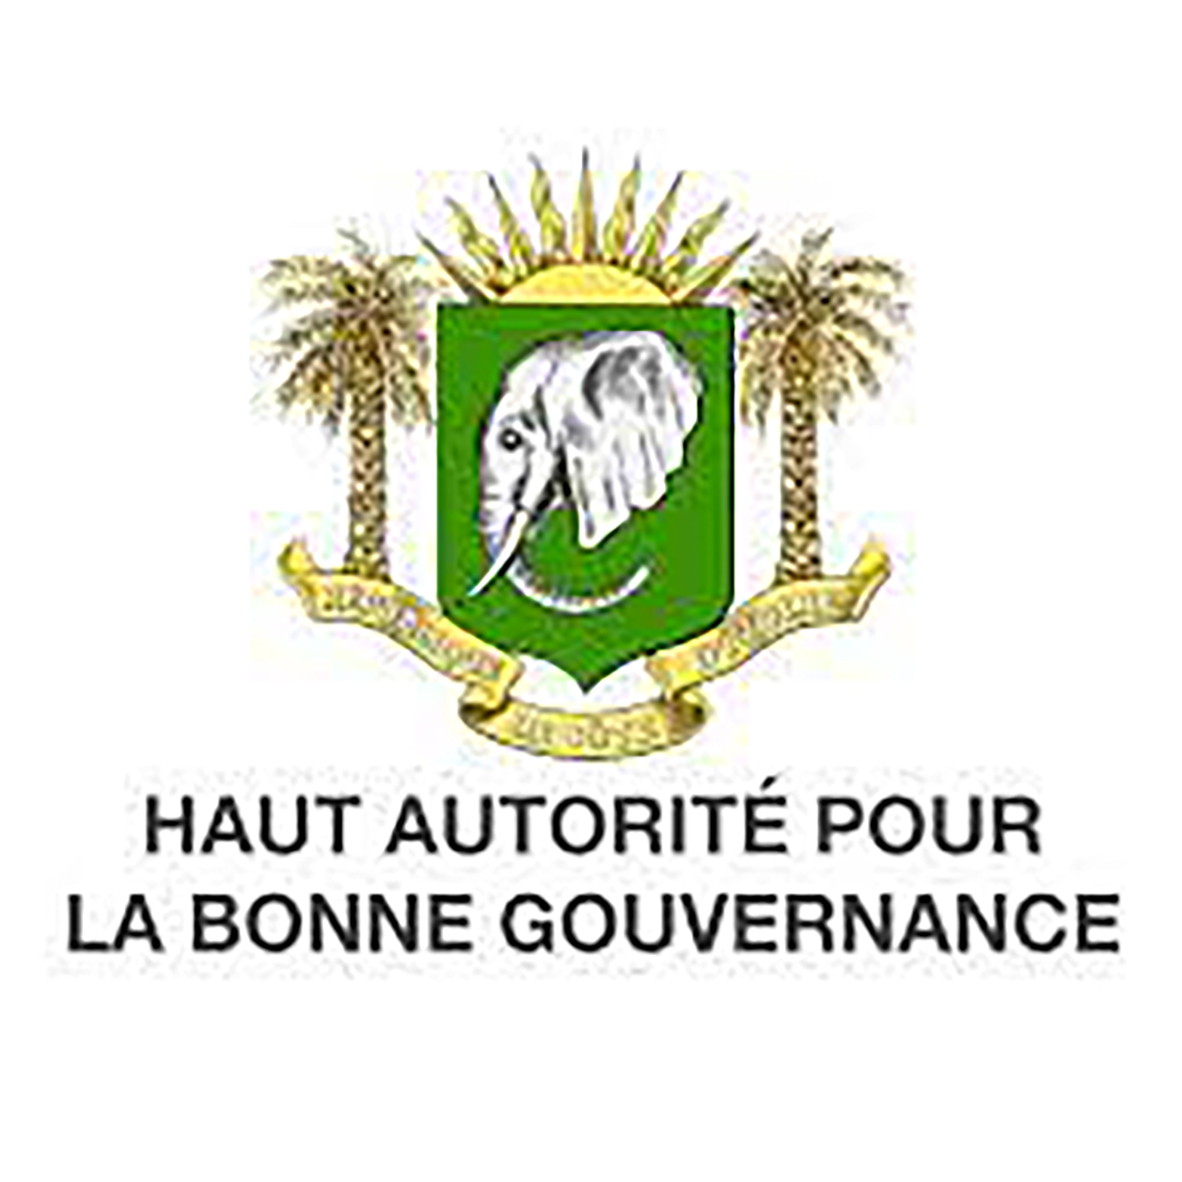 HAUTE AUTORITÉ DE LA BONNE GOUVERNANCE DE CÔTE D'IVOIRE